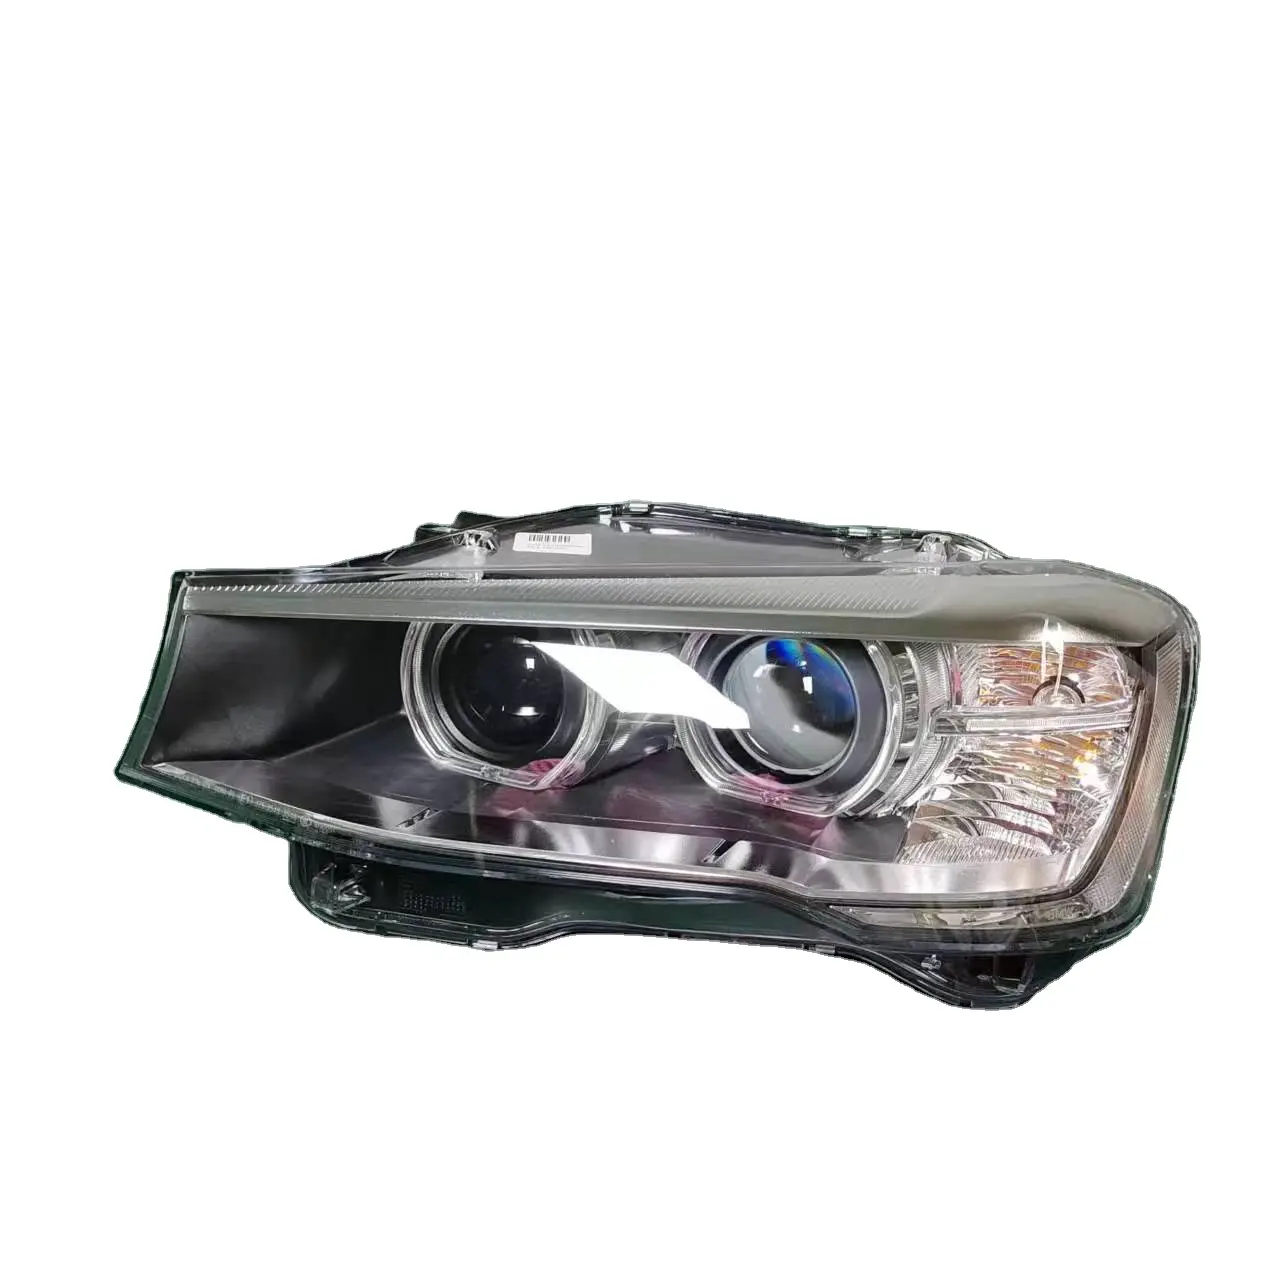 Für BMW Autos chein werfer x3 F25 Kfz-Beleuchtungs system LED-Licht für Autofabrik Direkt vertrieb Auto lichter LED-Scheinwerfer